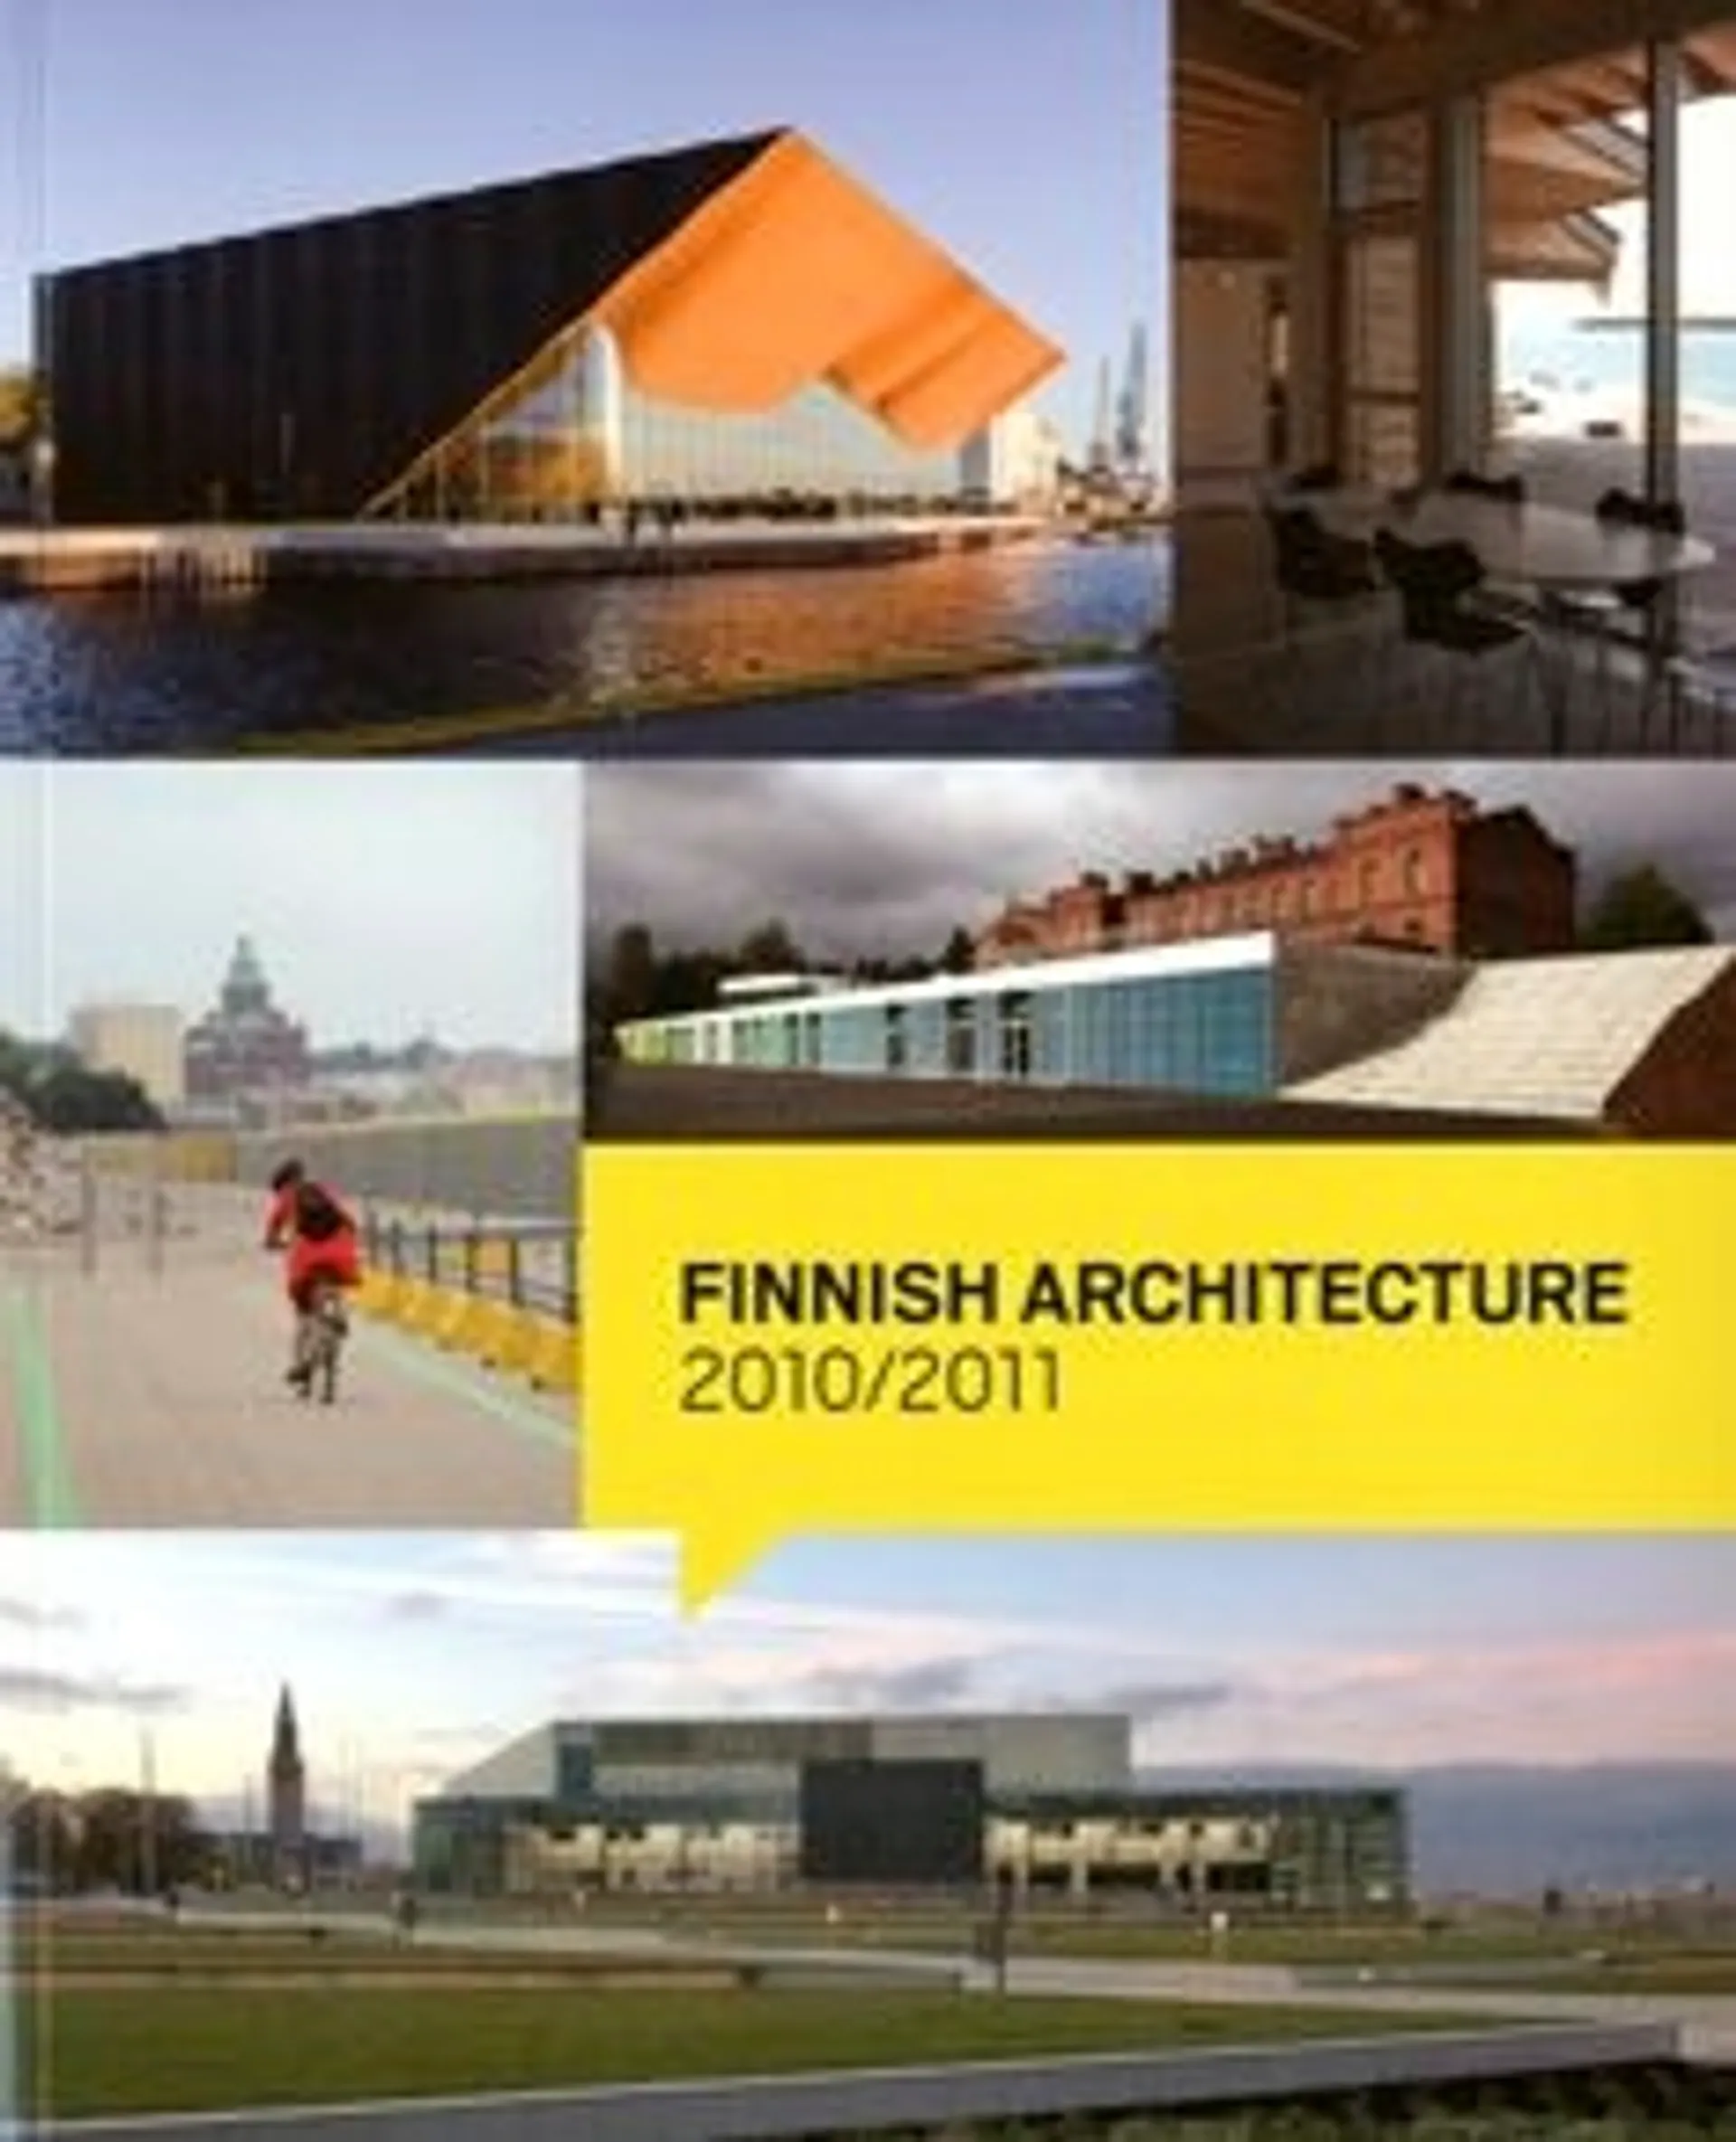 Böök, Finnish Architecture - 2010/2011